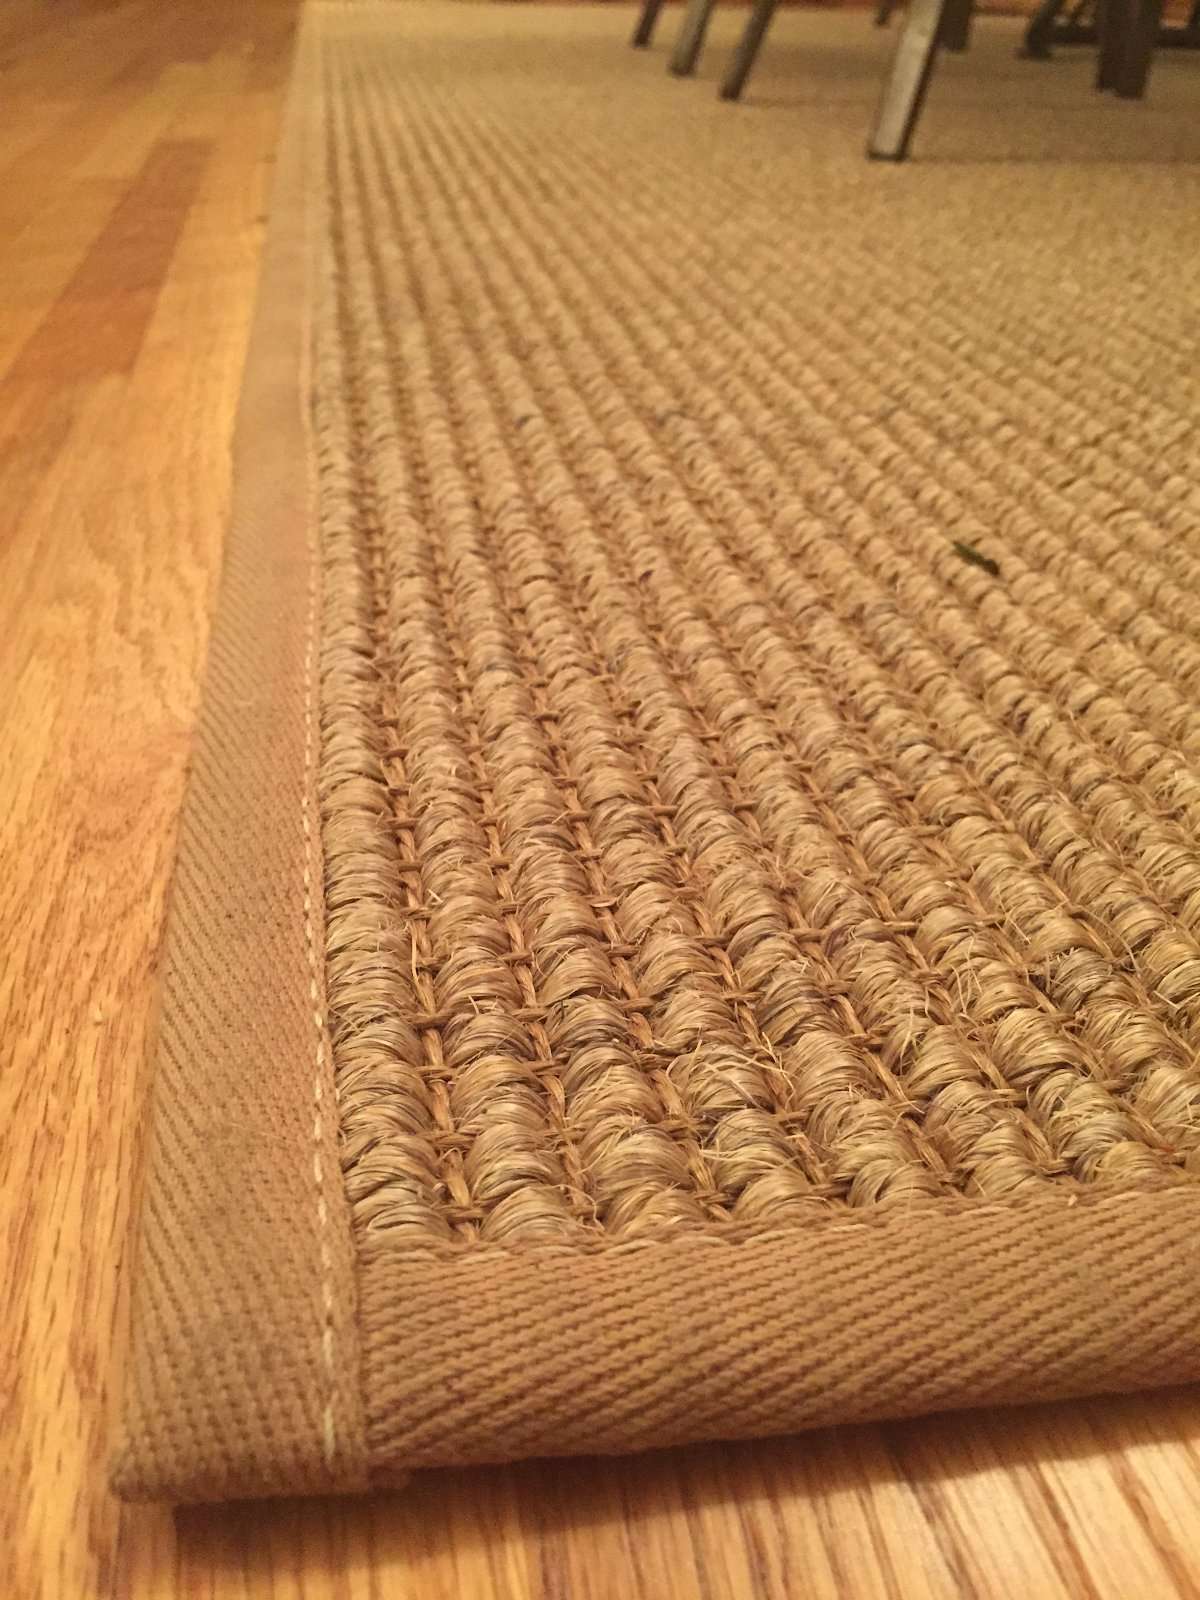 8 Photos Polypropylene Carpet Allergy And Review